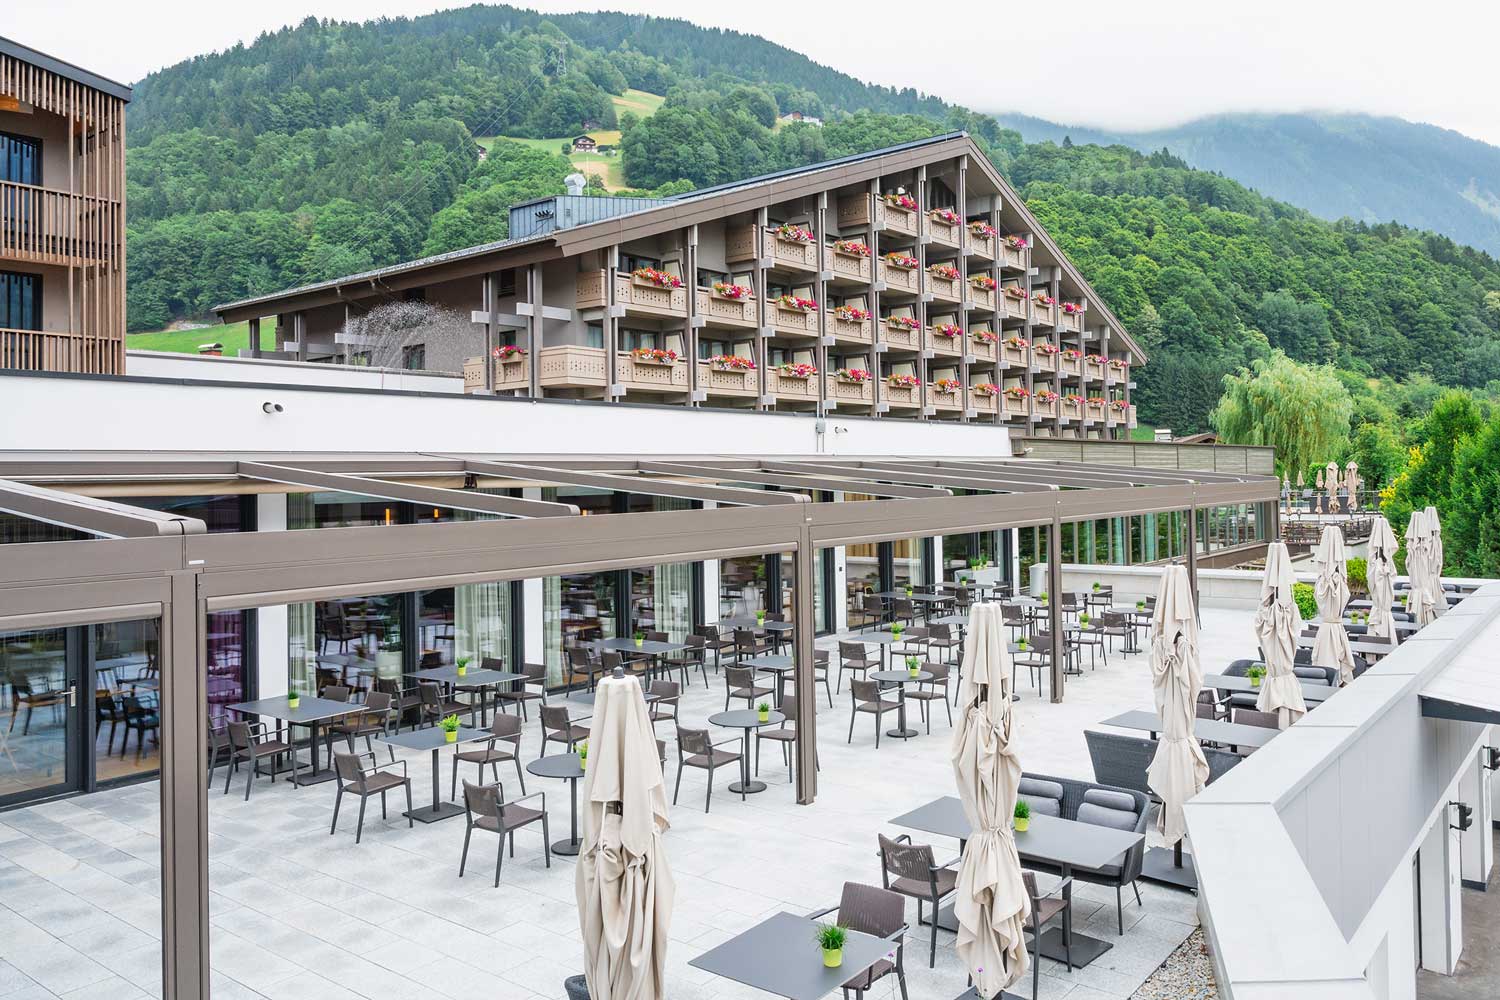 Gastronomie-Terrasse umgestaltet - Planen & Einrichten - markilux project Referenz Hotel Loewen AT 05